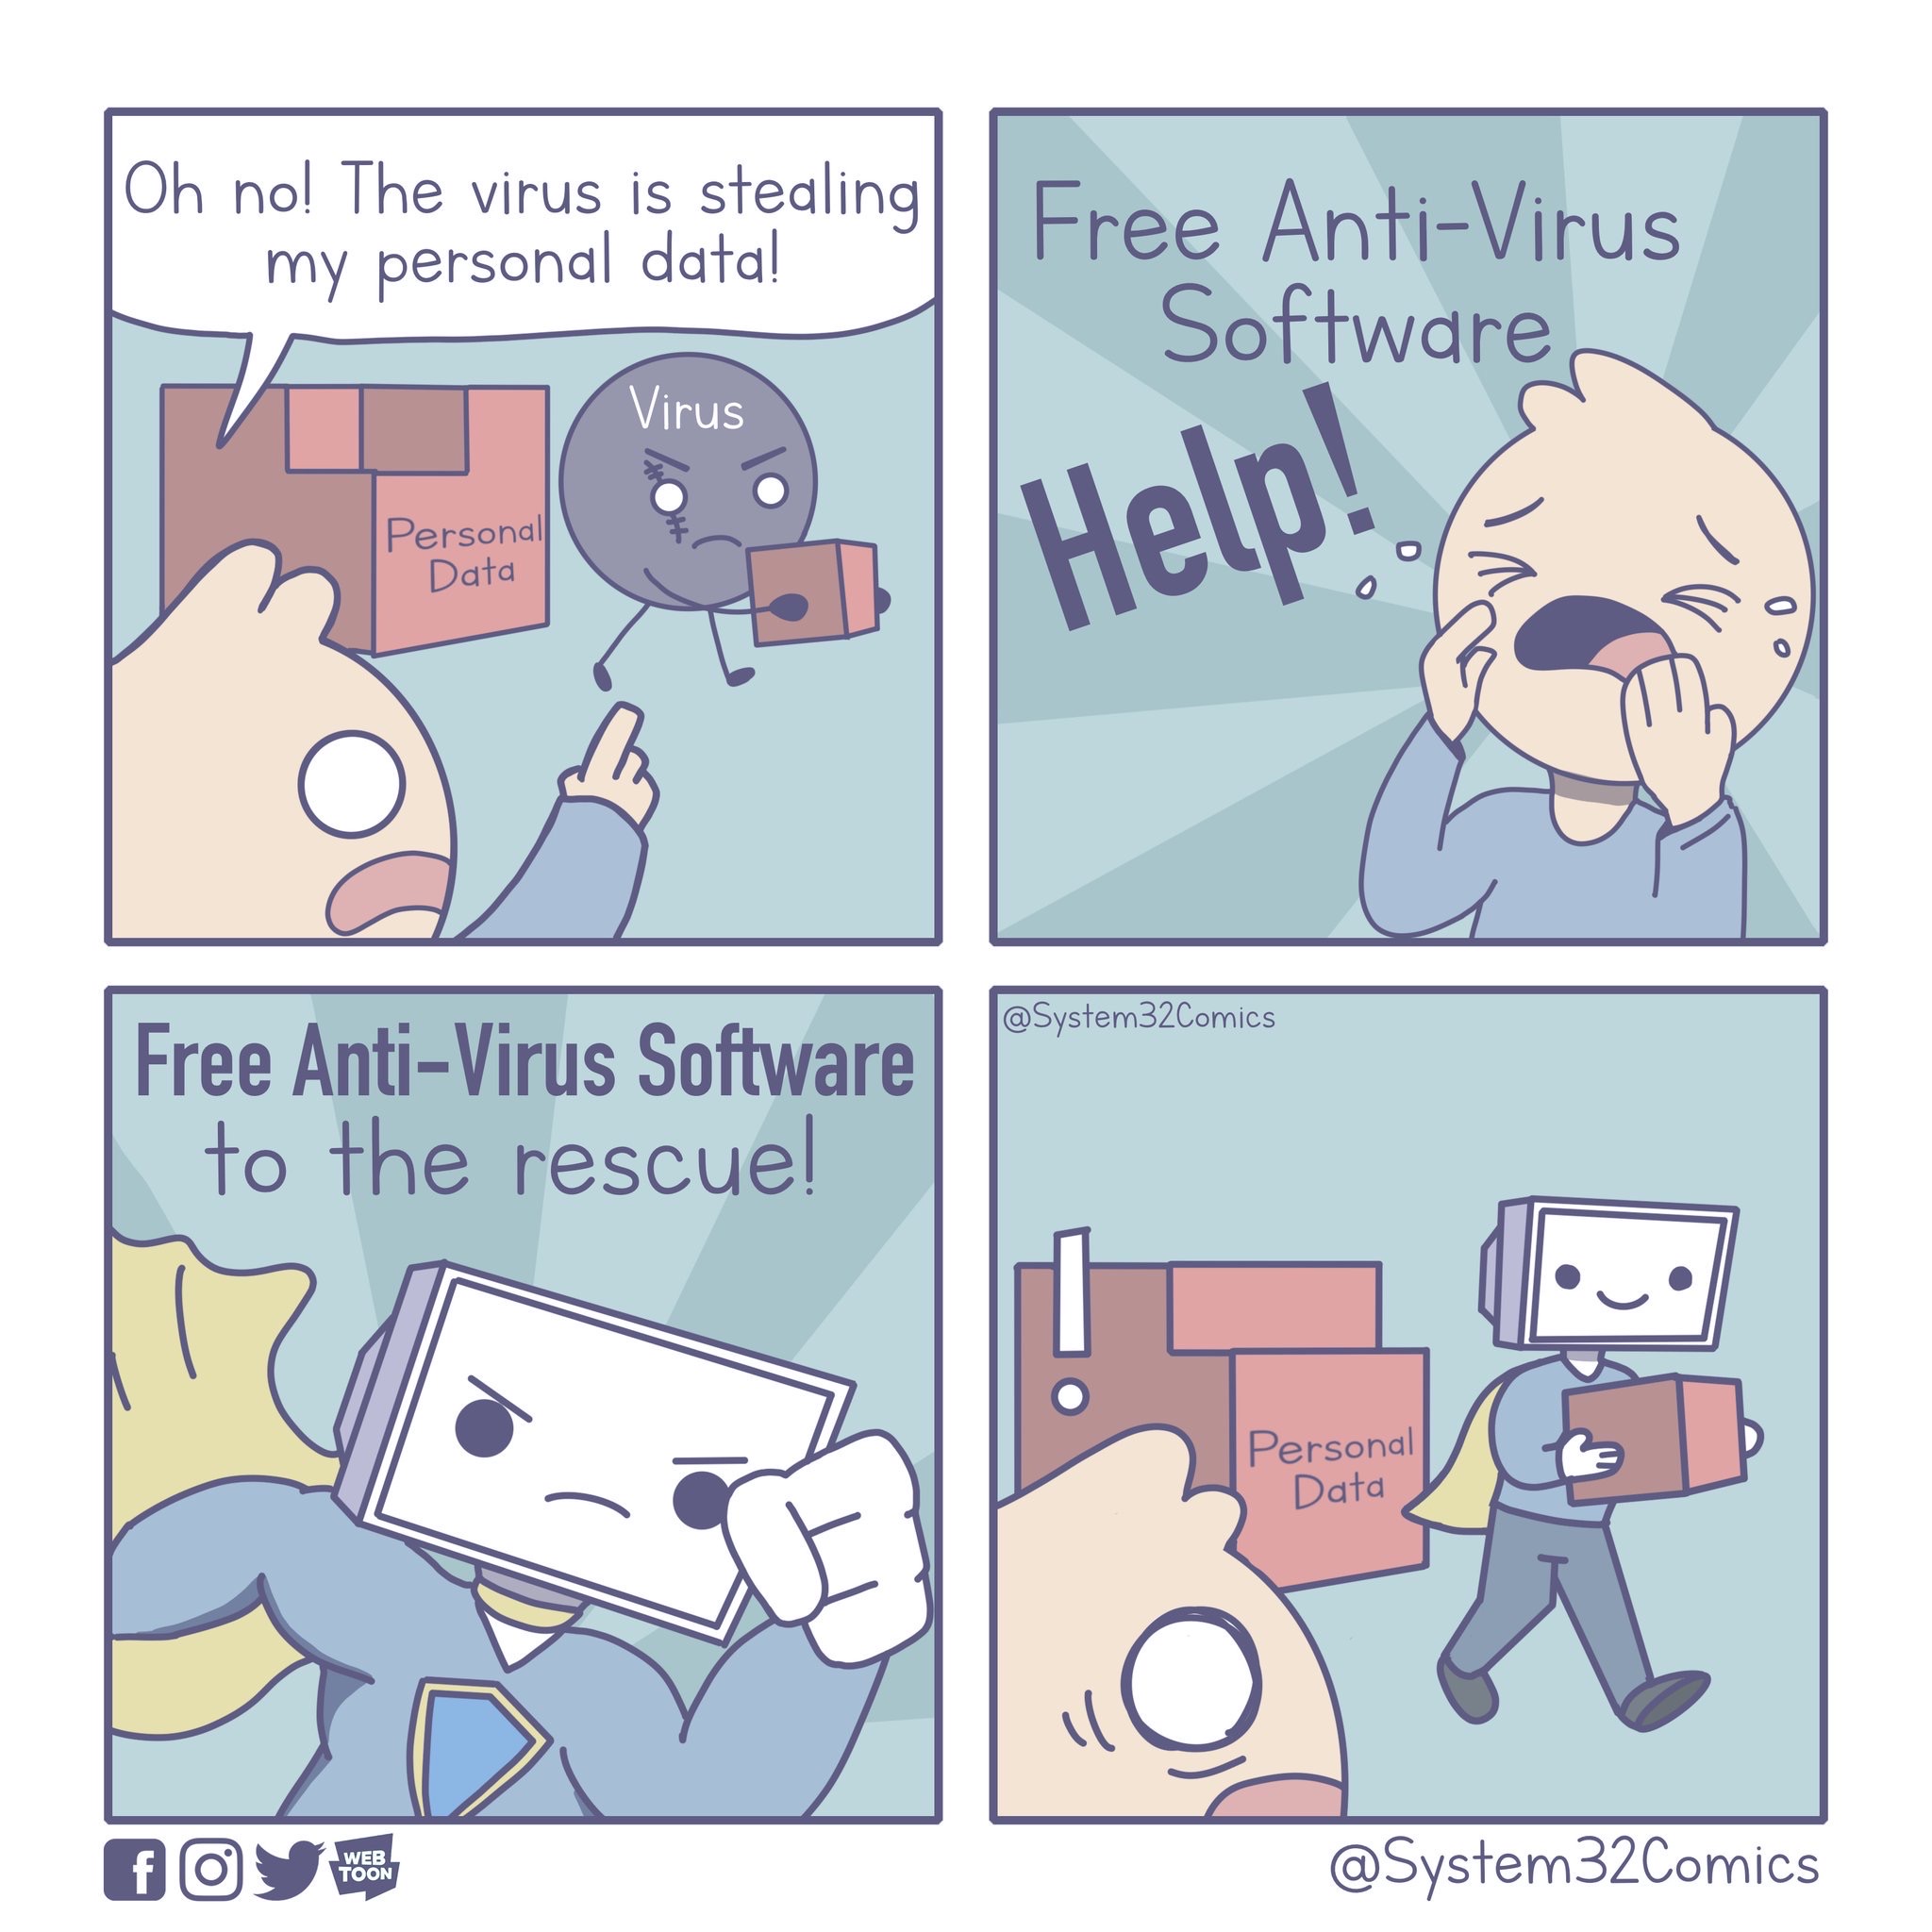 anti-virus_software.jpg